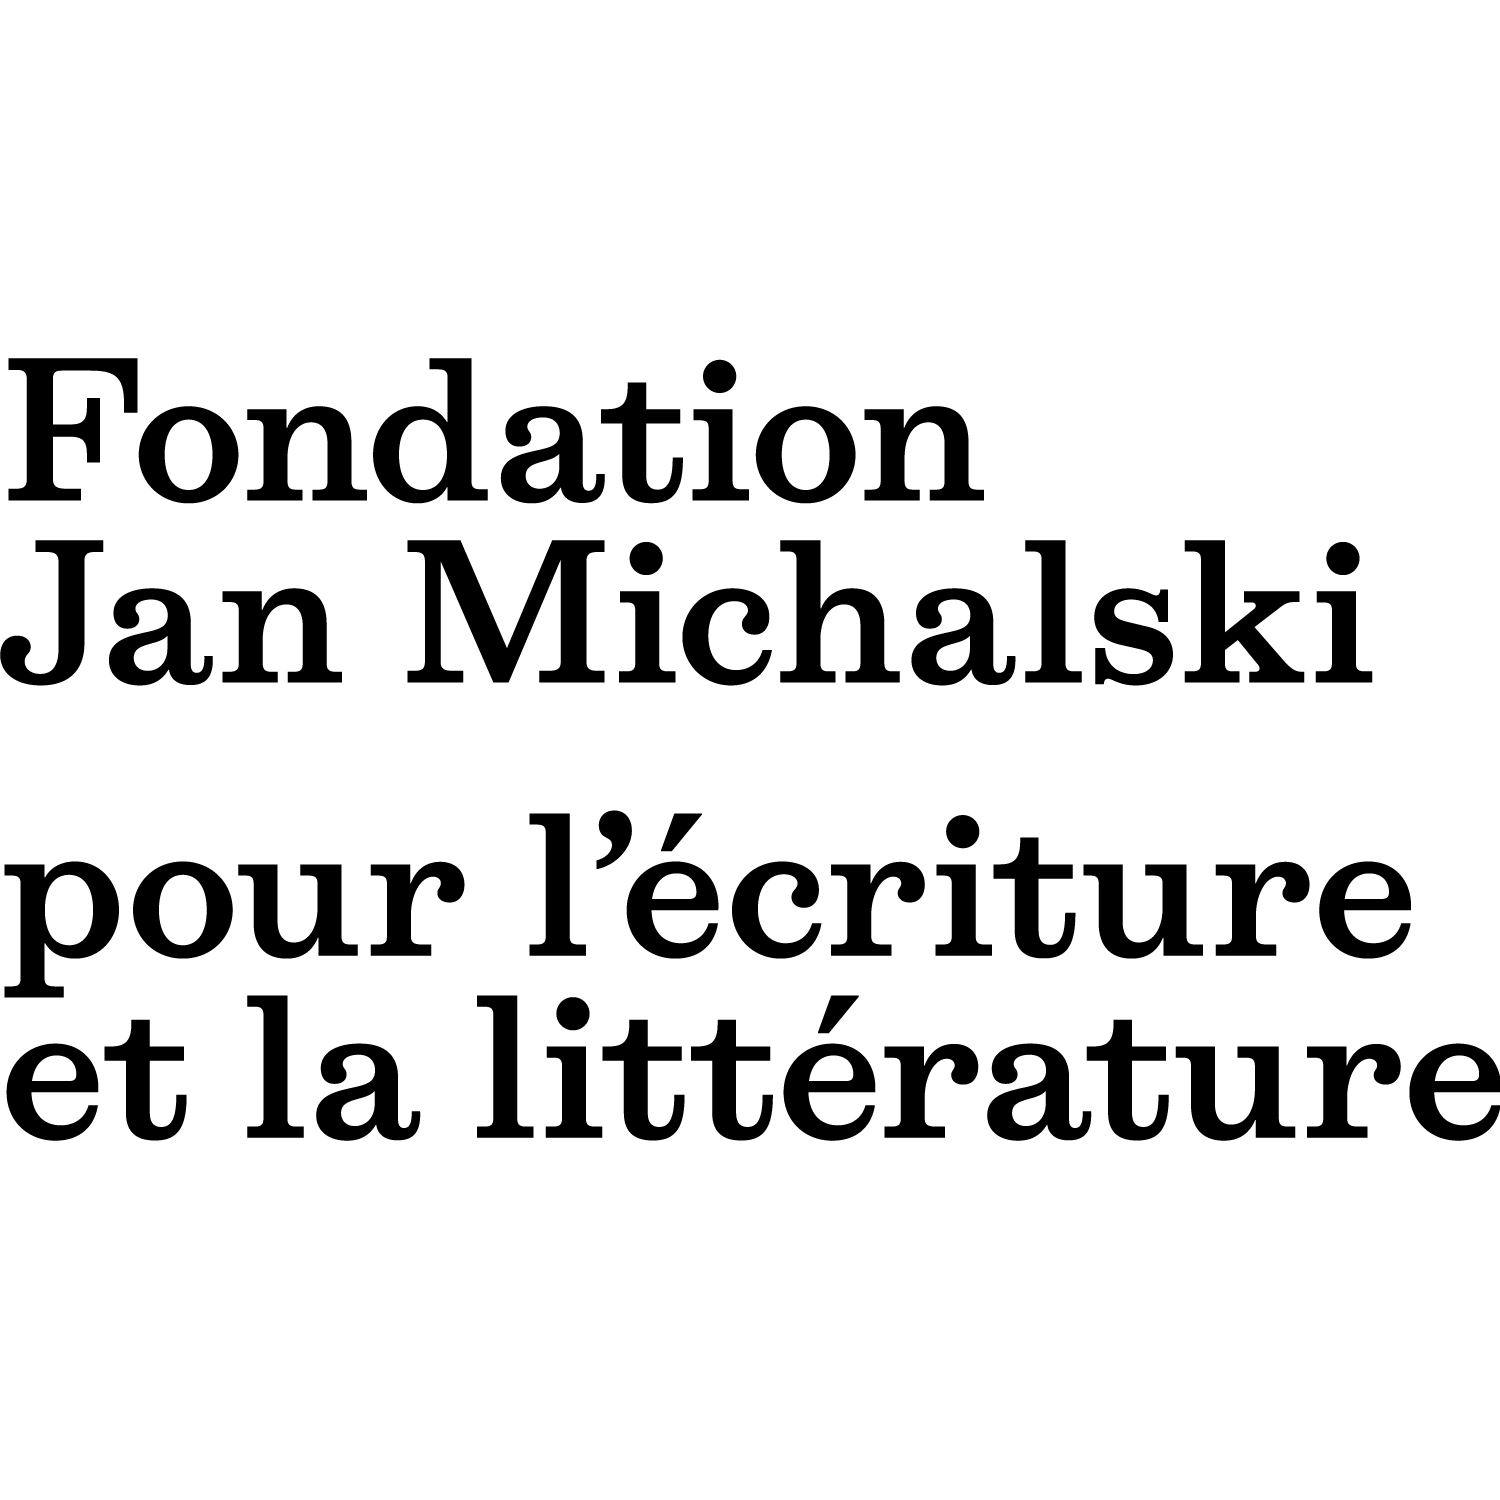 Fondation Jan Michalski pour l'écriture et la littérature Logo